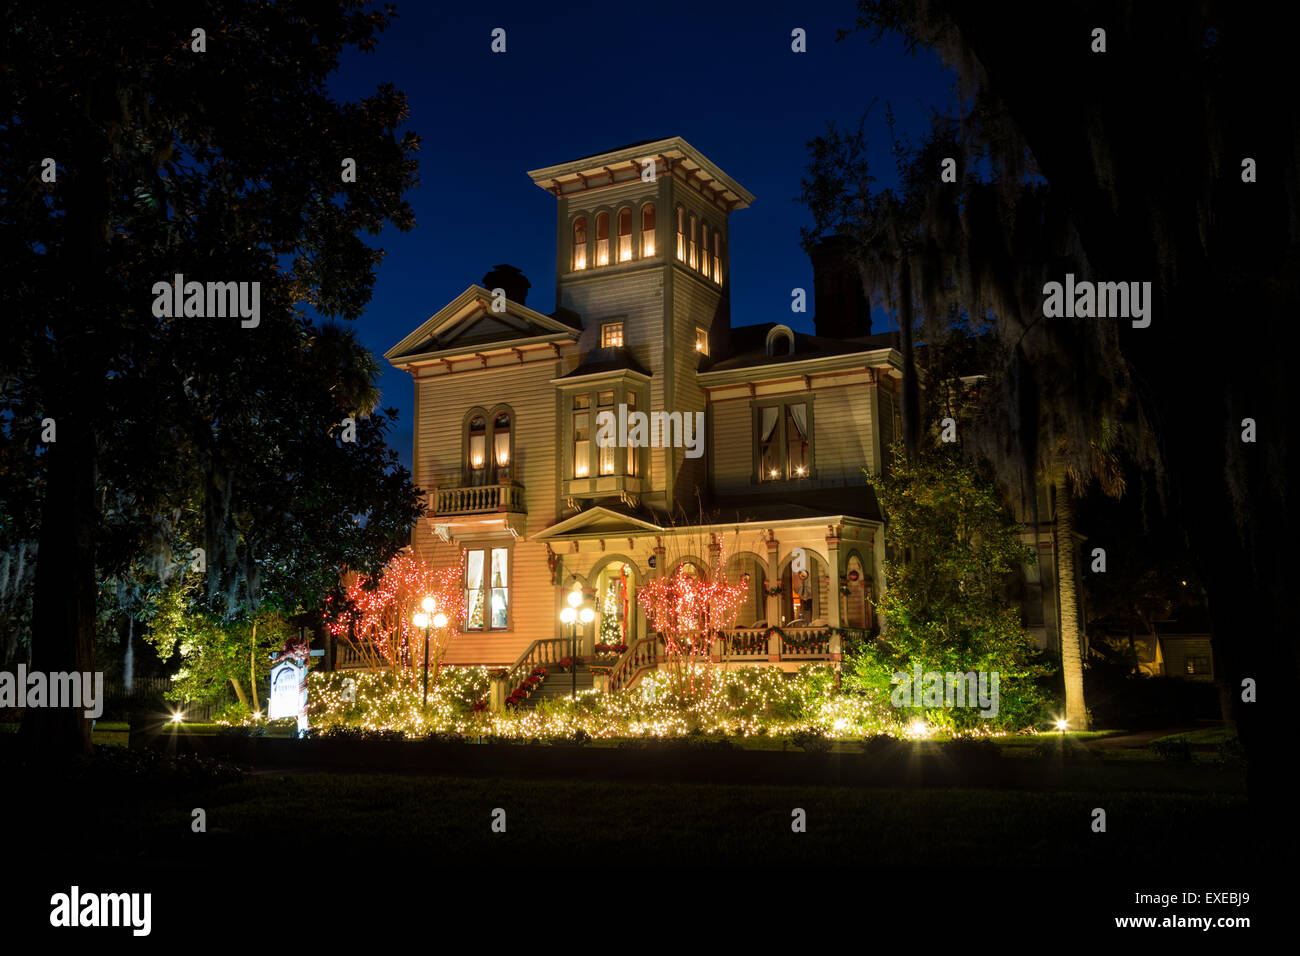 La Fairbanks House Bed and Breakfast décorées de lumières de Noël, Amelia Island, Floride Banque D'Images